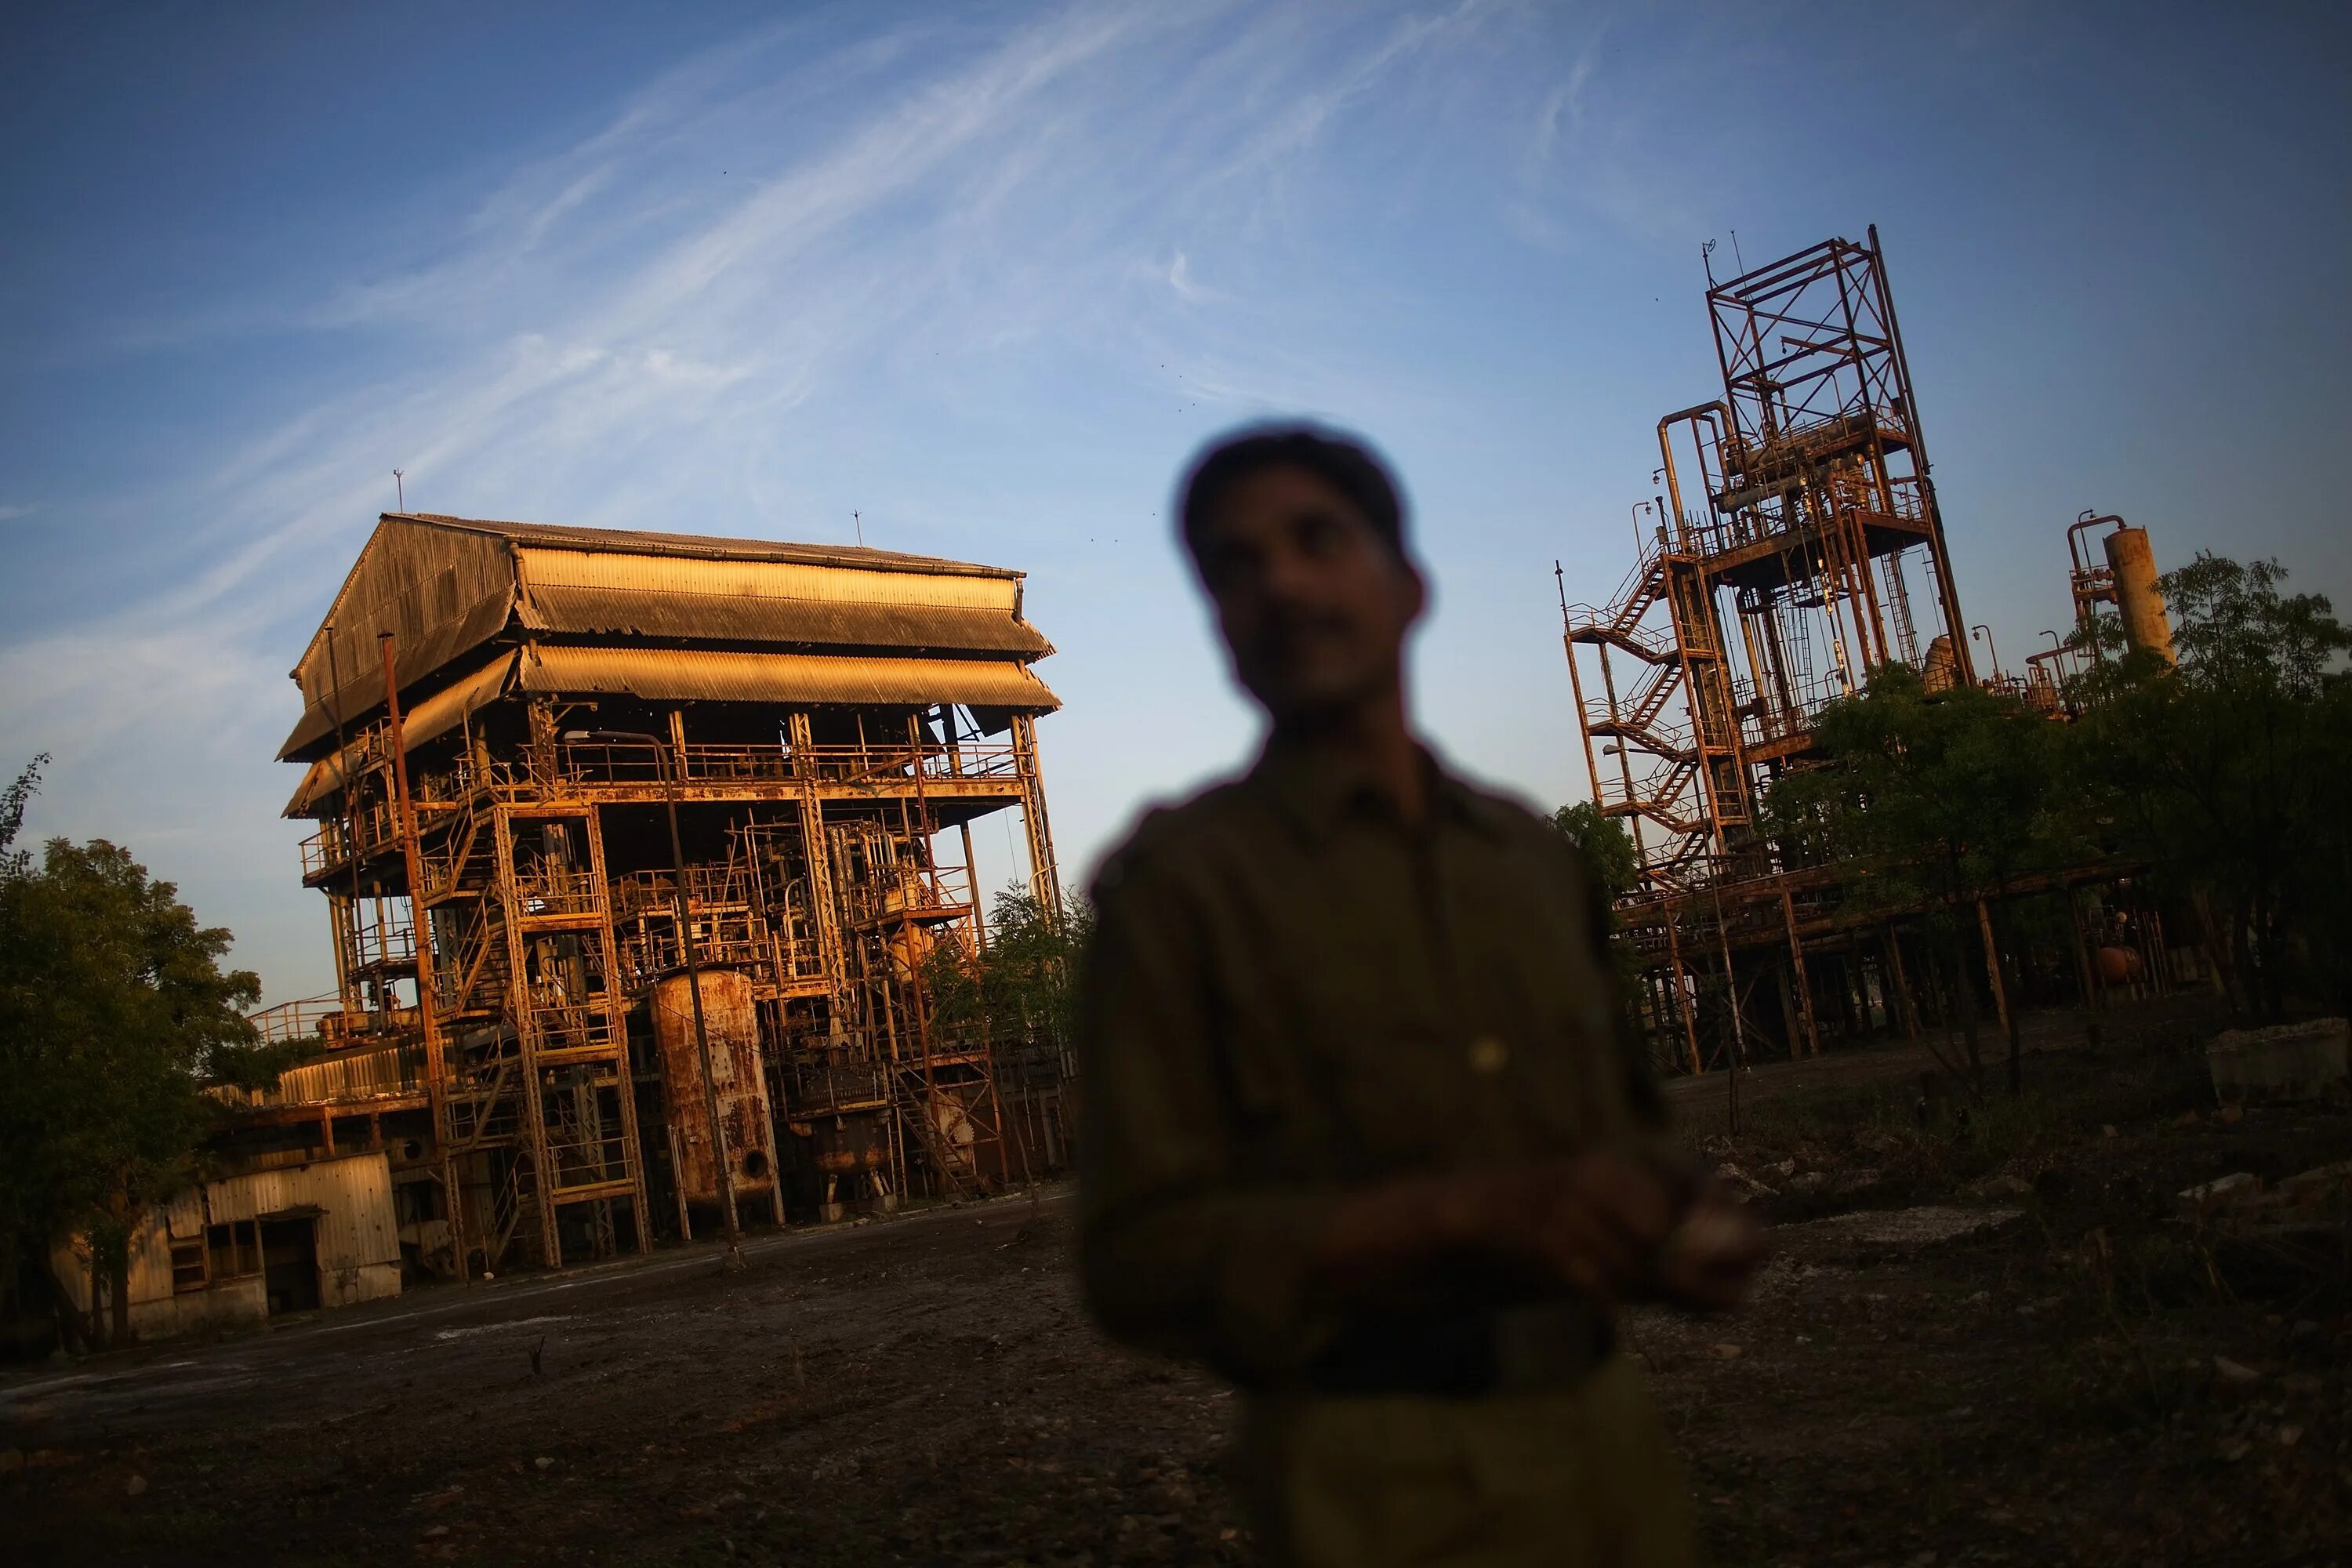 Индия Бхопал завод Union Carbide в 1984. Юнион Карбайд в Бхопале. Завод Union Carbide Бхопал. Бхопальская катастрофа 3 декабря 1984 года.